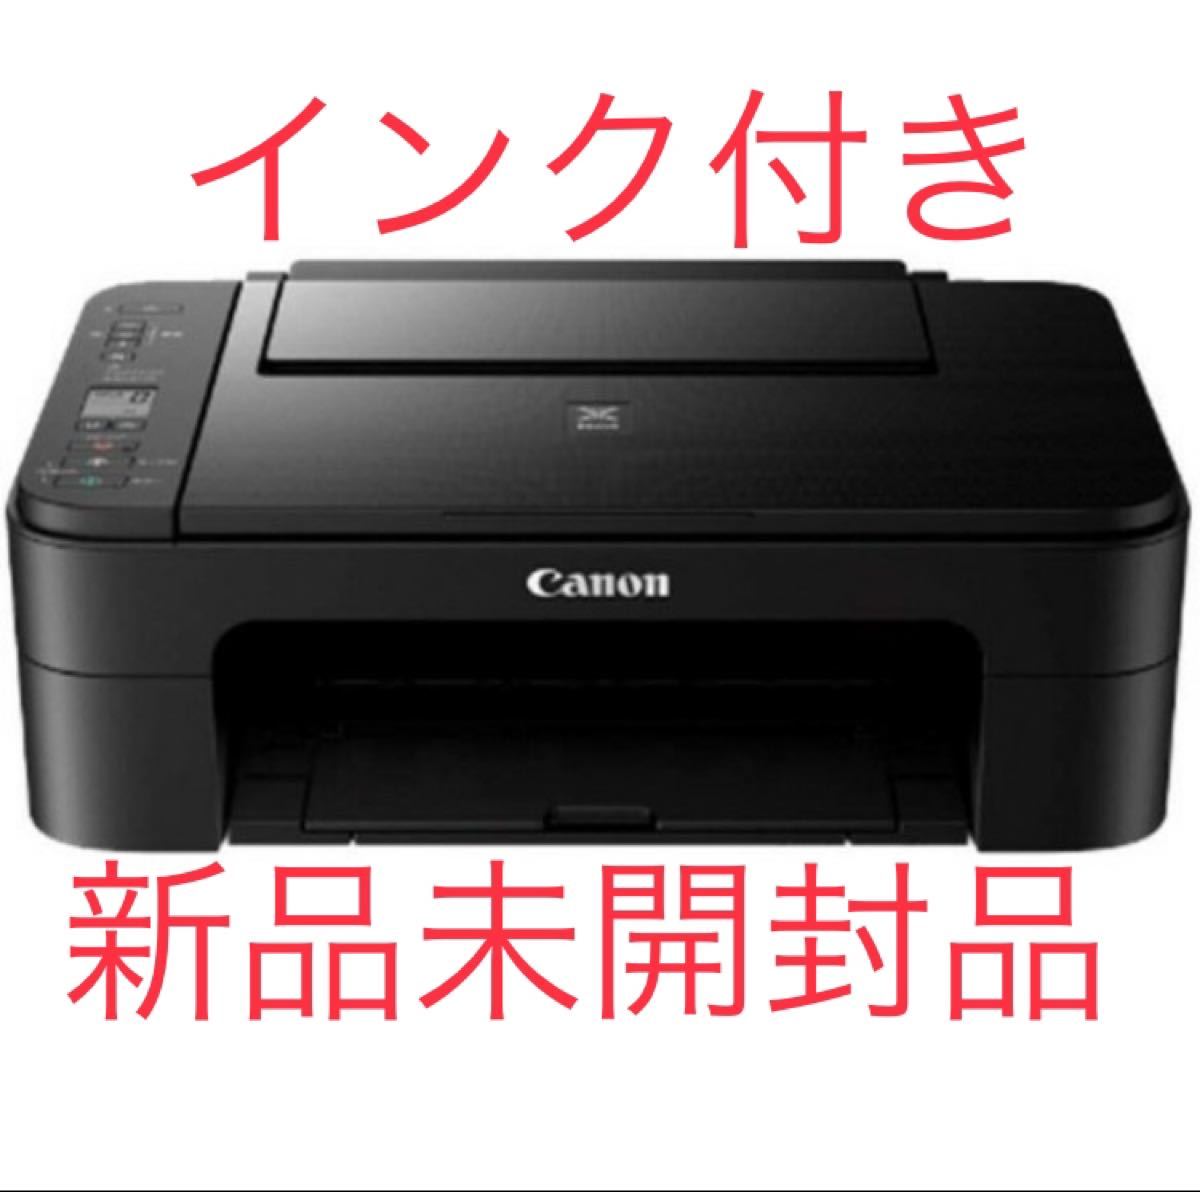 キャノン 複合機プリンター TS3330 インクジェットプリンター 新品未開封品(インク付き)